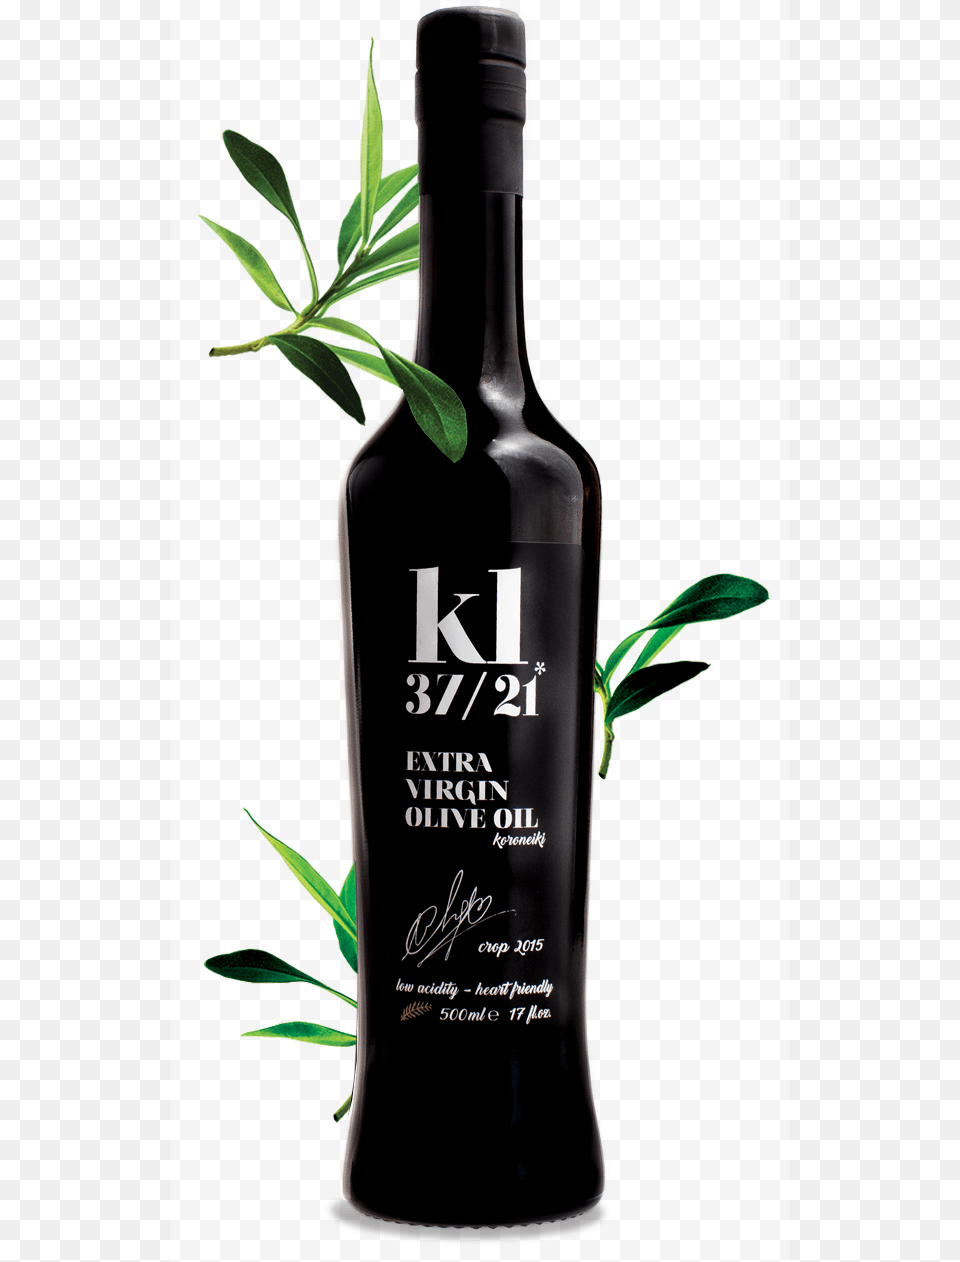 Extra Virgin Olive Oil Glass Bottle, Alcohol, Beverage, Liquor, Beer Png Image